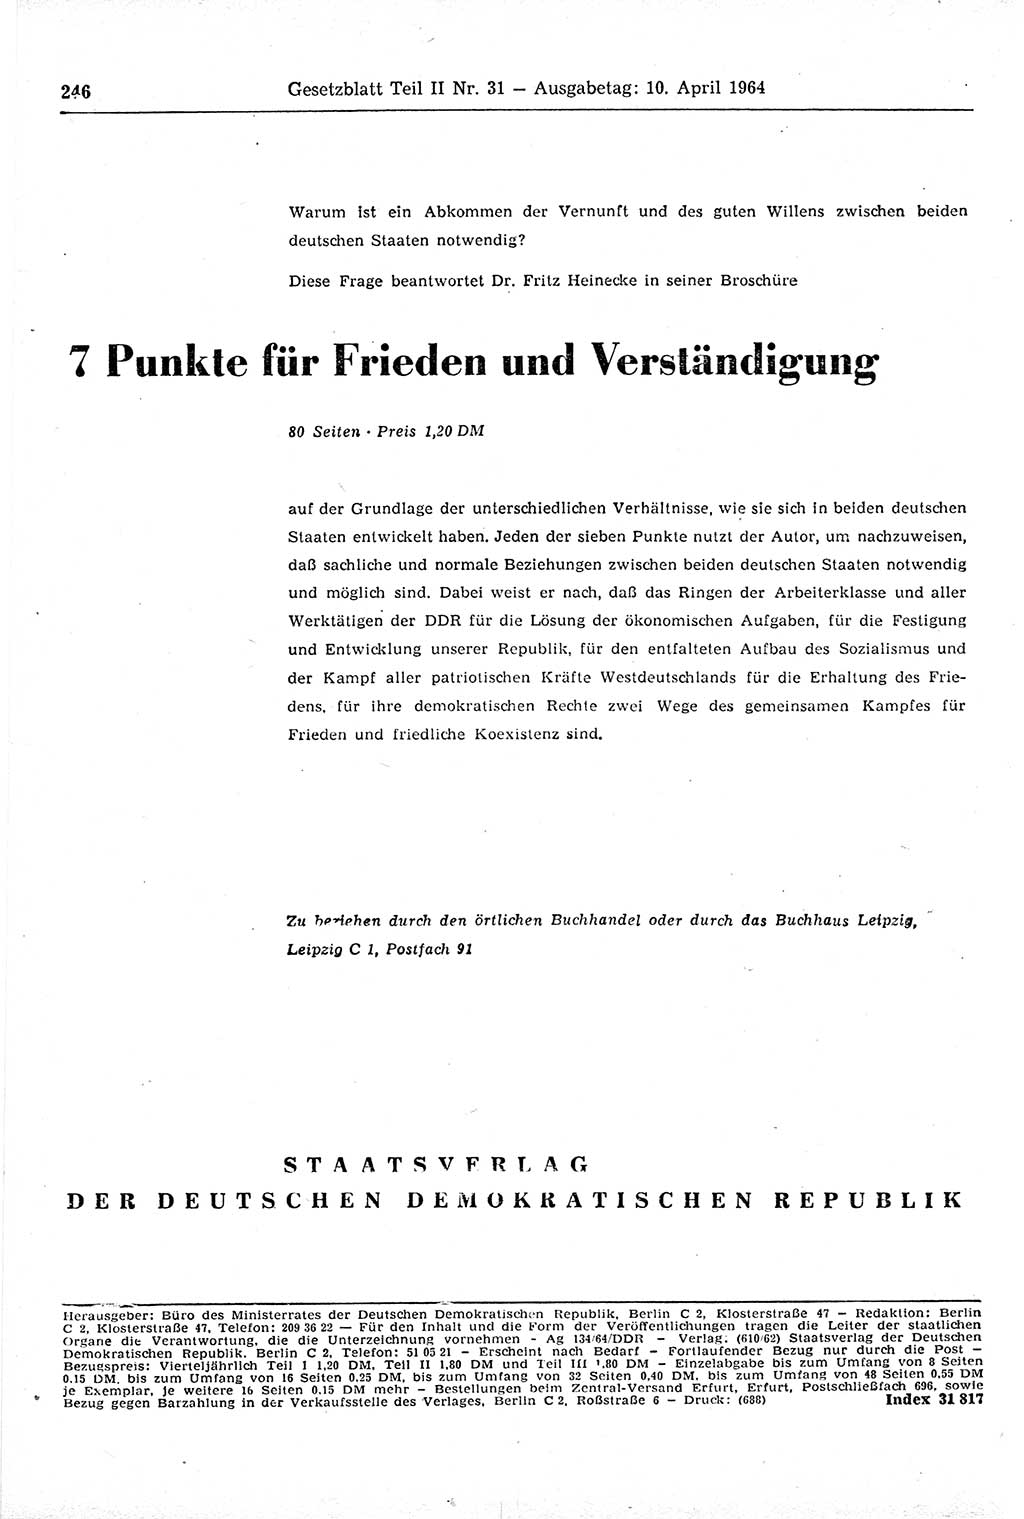 Gesetzblatt (GBl.) der Deutschen Demokratischen Republik (DDR) Teil ⅠⅠ 1964, Seite 246 (GBl. DDR ⅠⅠ 1964, S. 246)